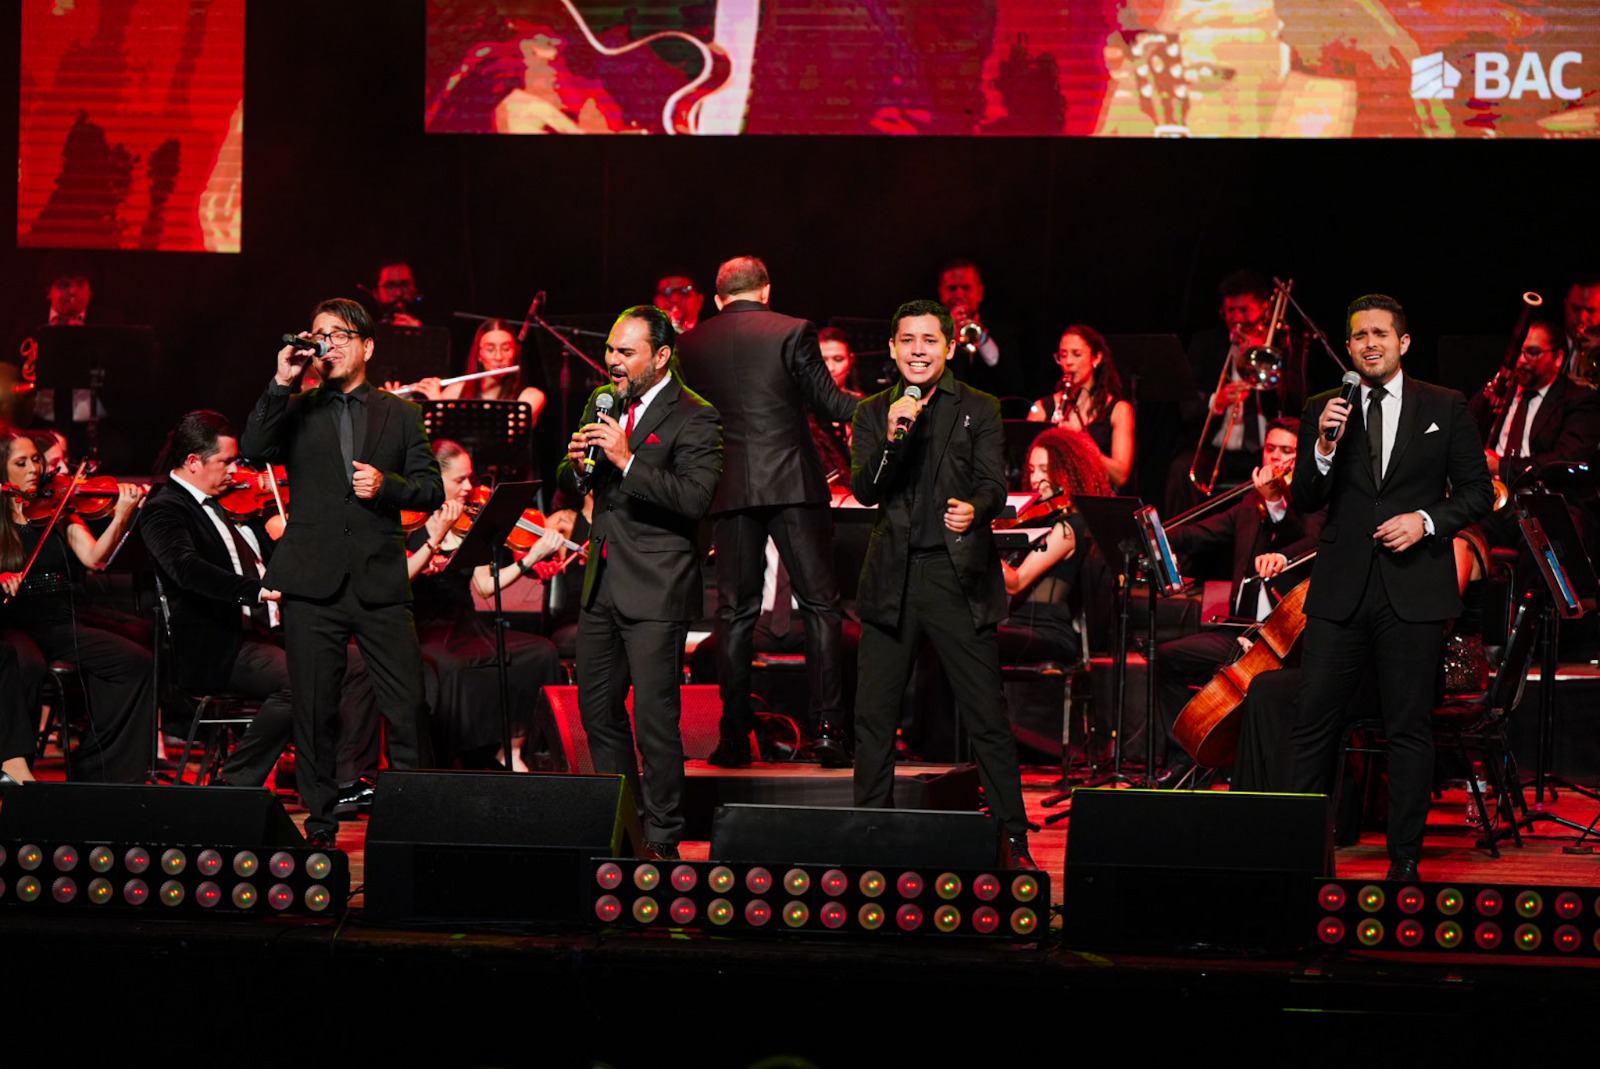 Escena cultural y musical de Costa Rica se enriquece con el lanzamiento de la Orquesta Universal